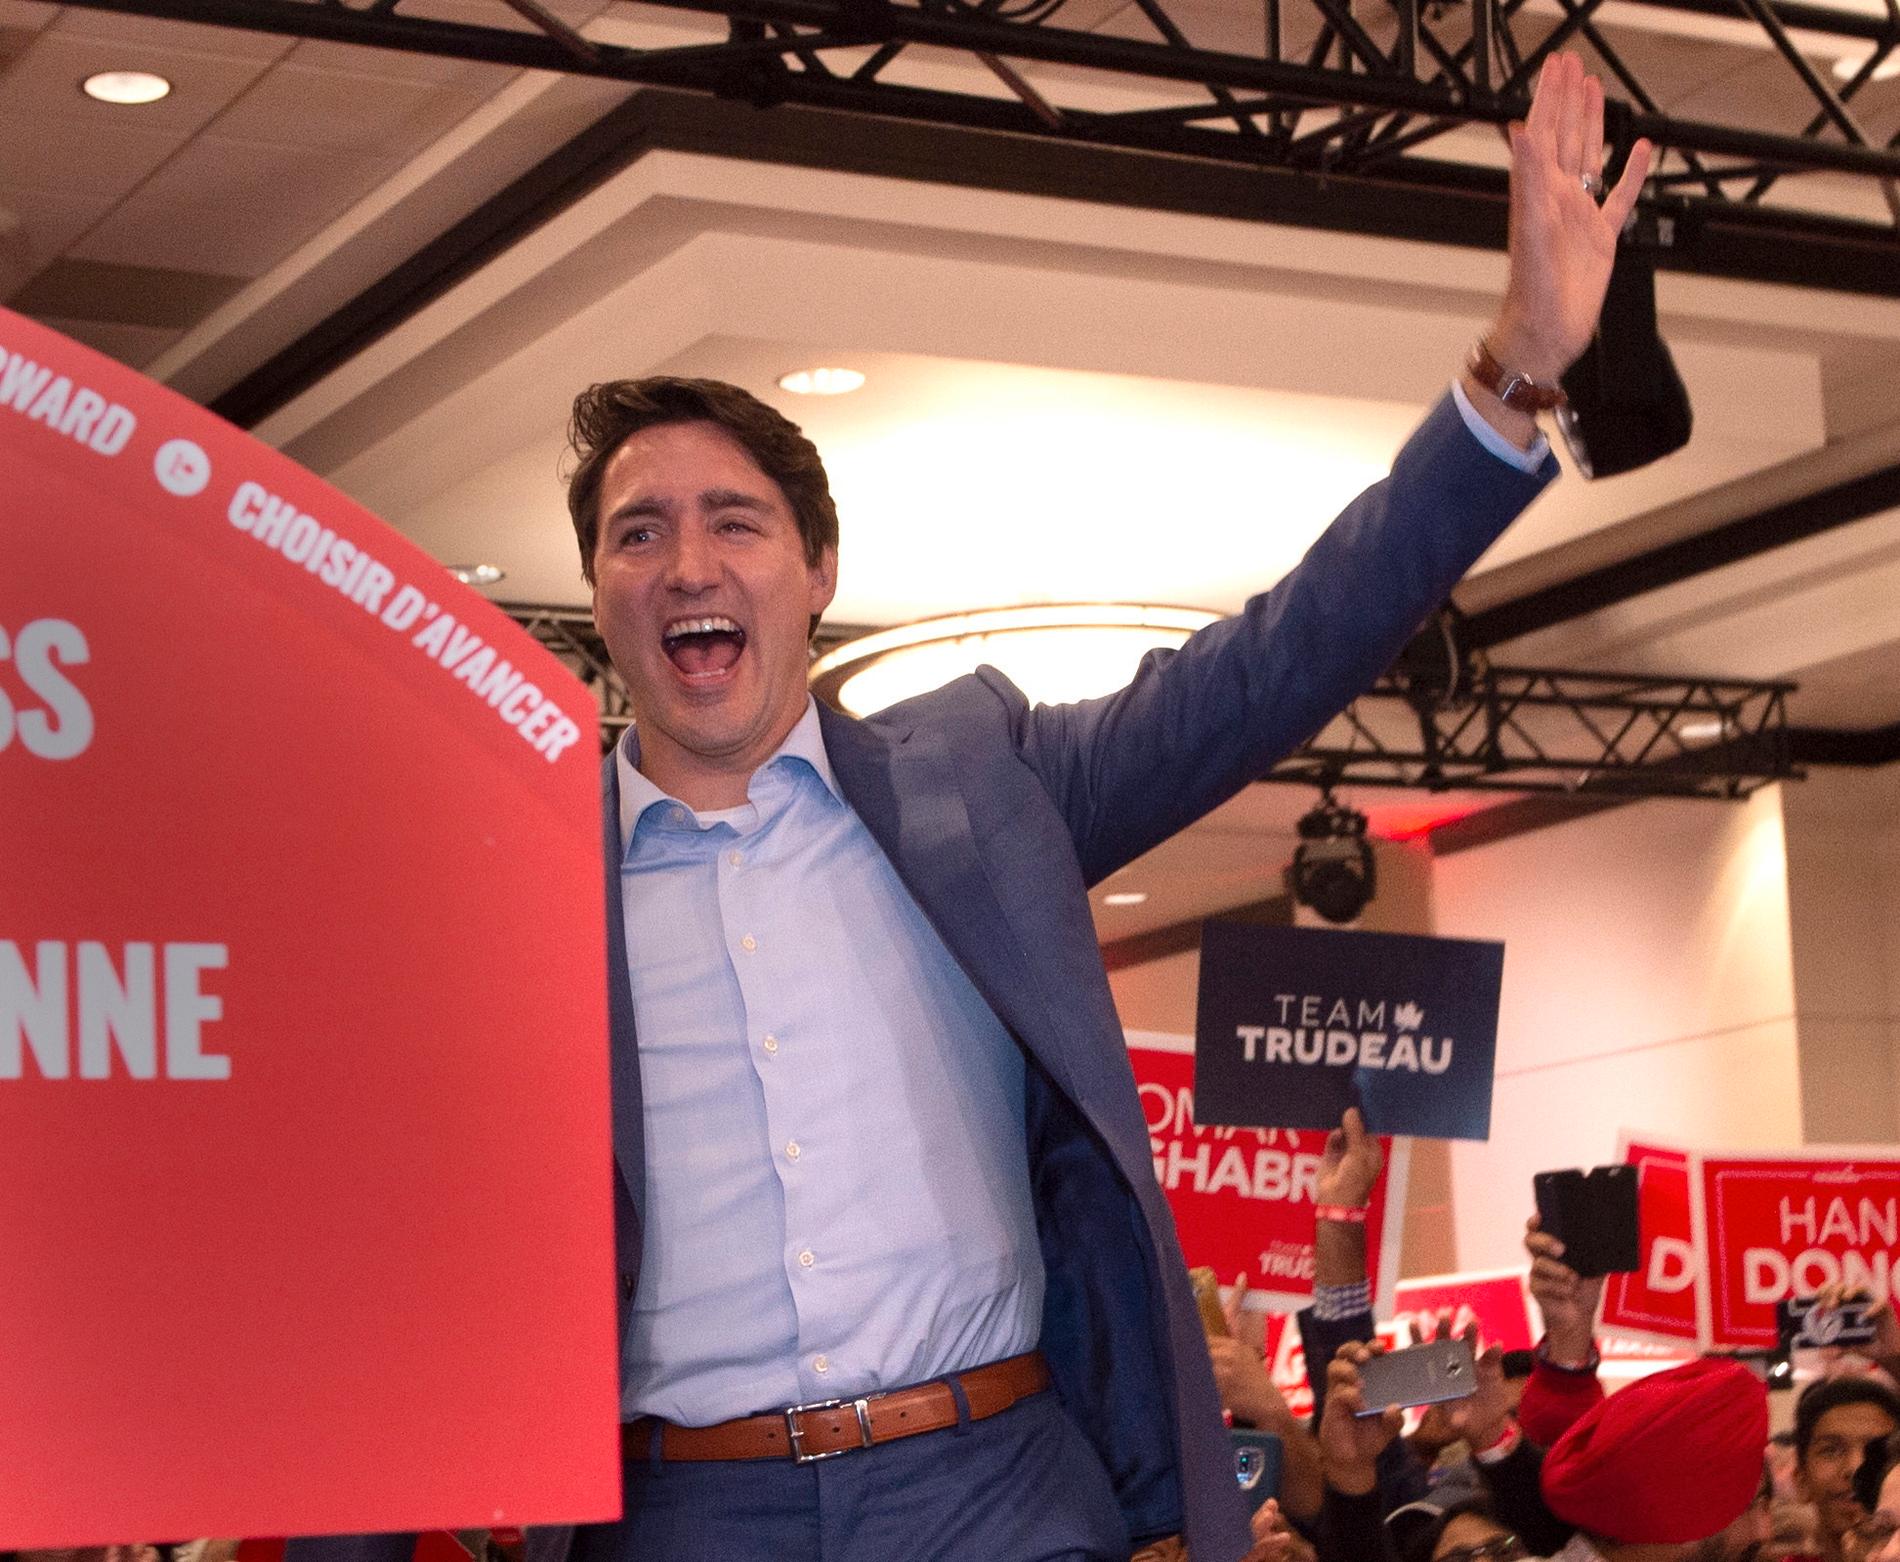 På bilder från kampanjmötet i Mississauga i provinsen Ontario ses Kanadas premiärminister Justin Trudeau bära en skottsäker väst.